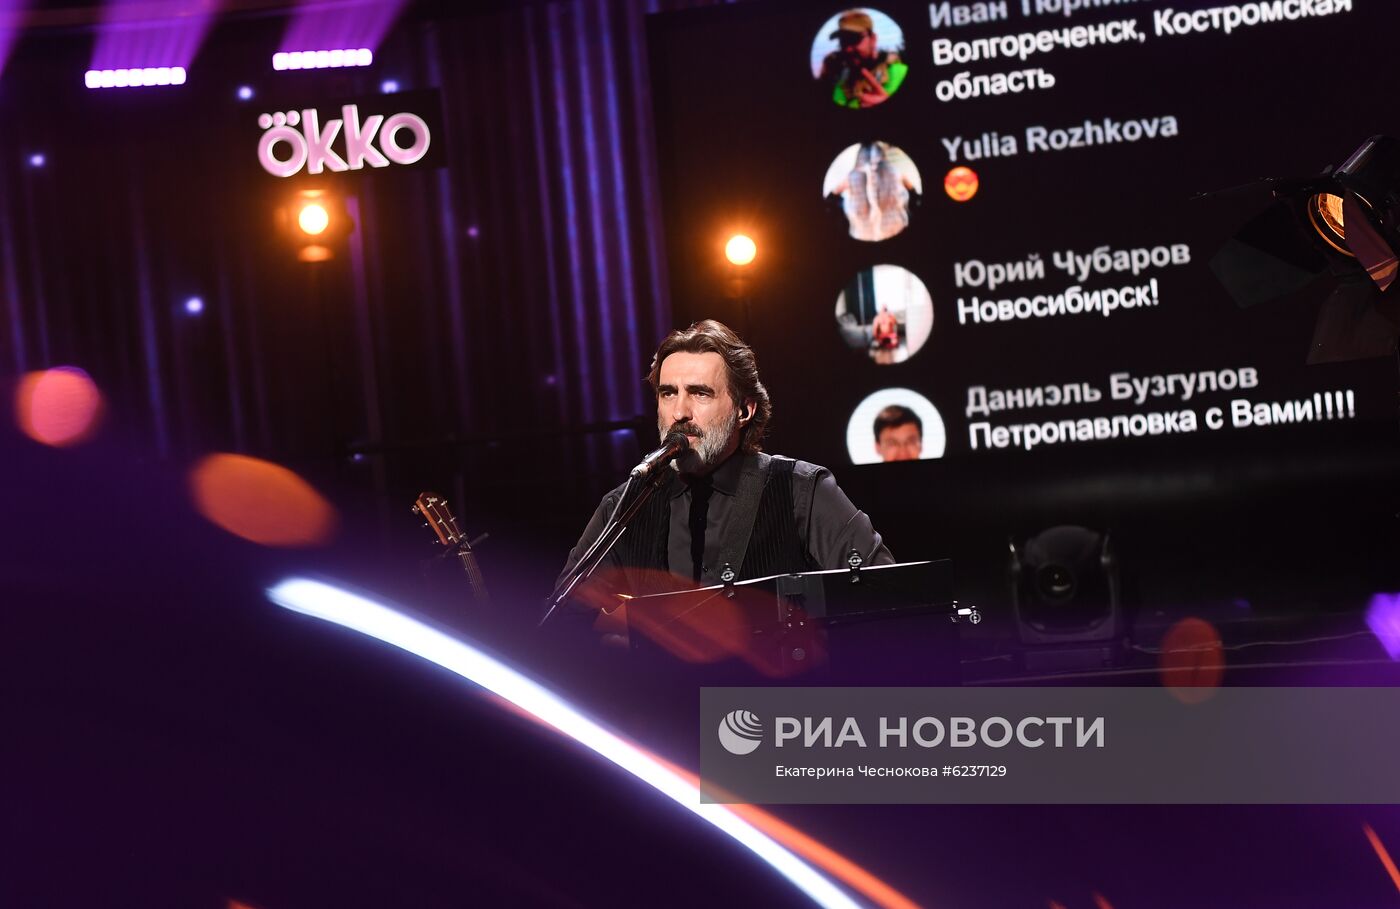 Онлайн-концерт В. Бутусова